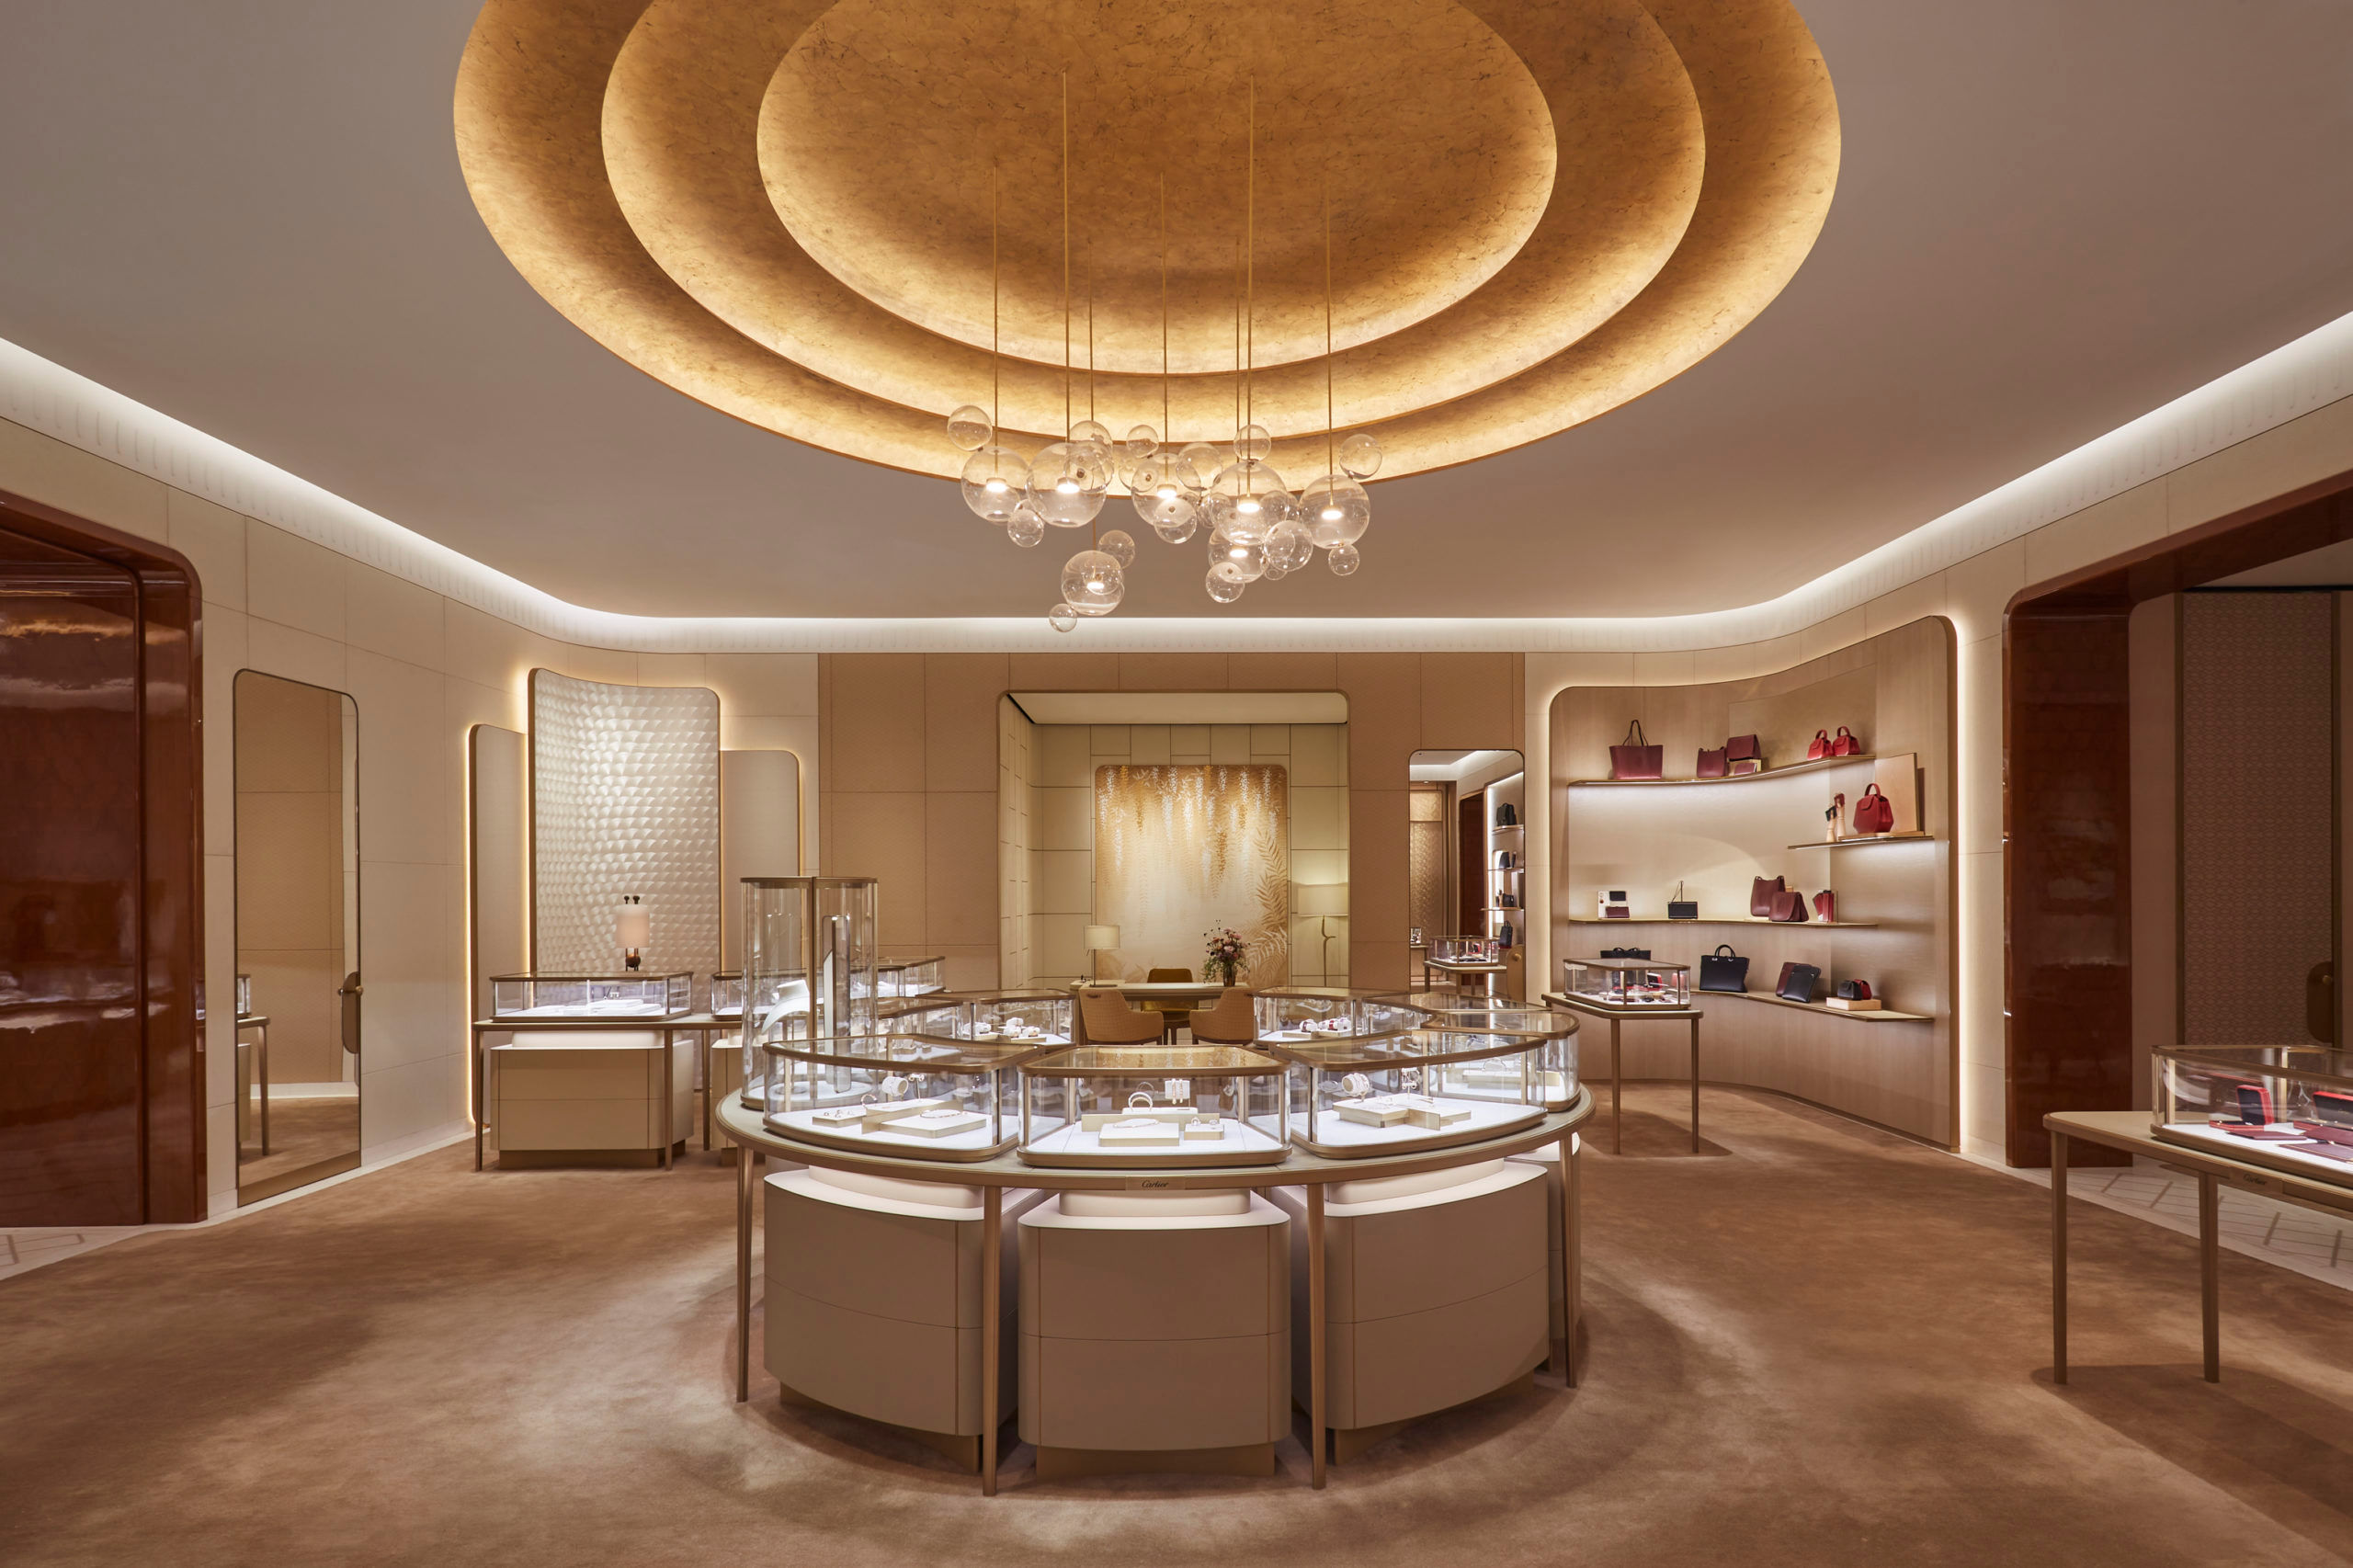 House Tour: Cartier's Newly Renovated 13 rue de la Paix Boutique